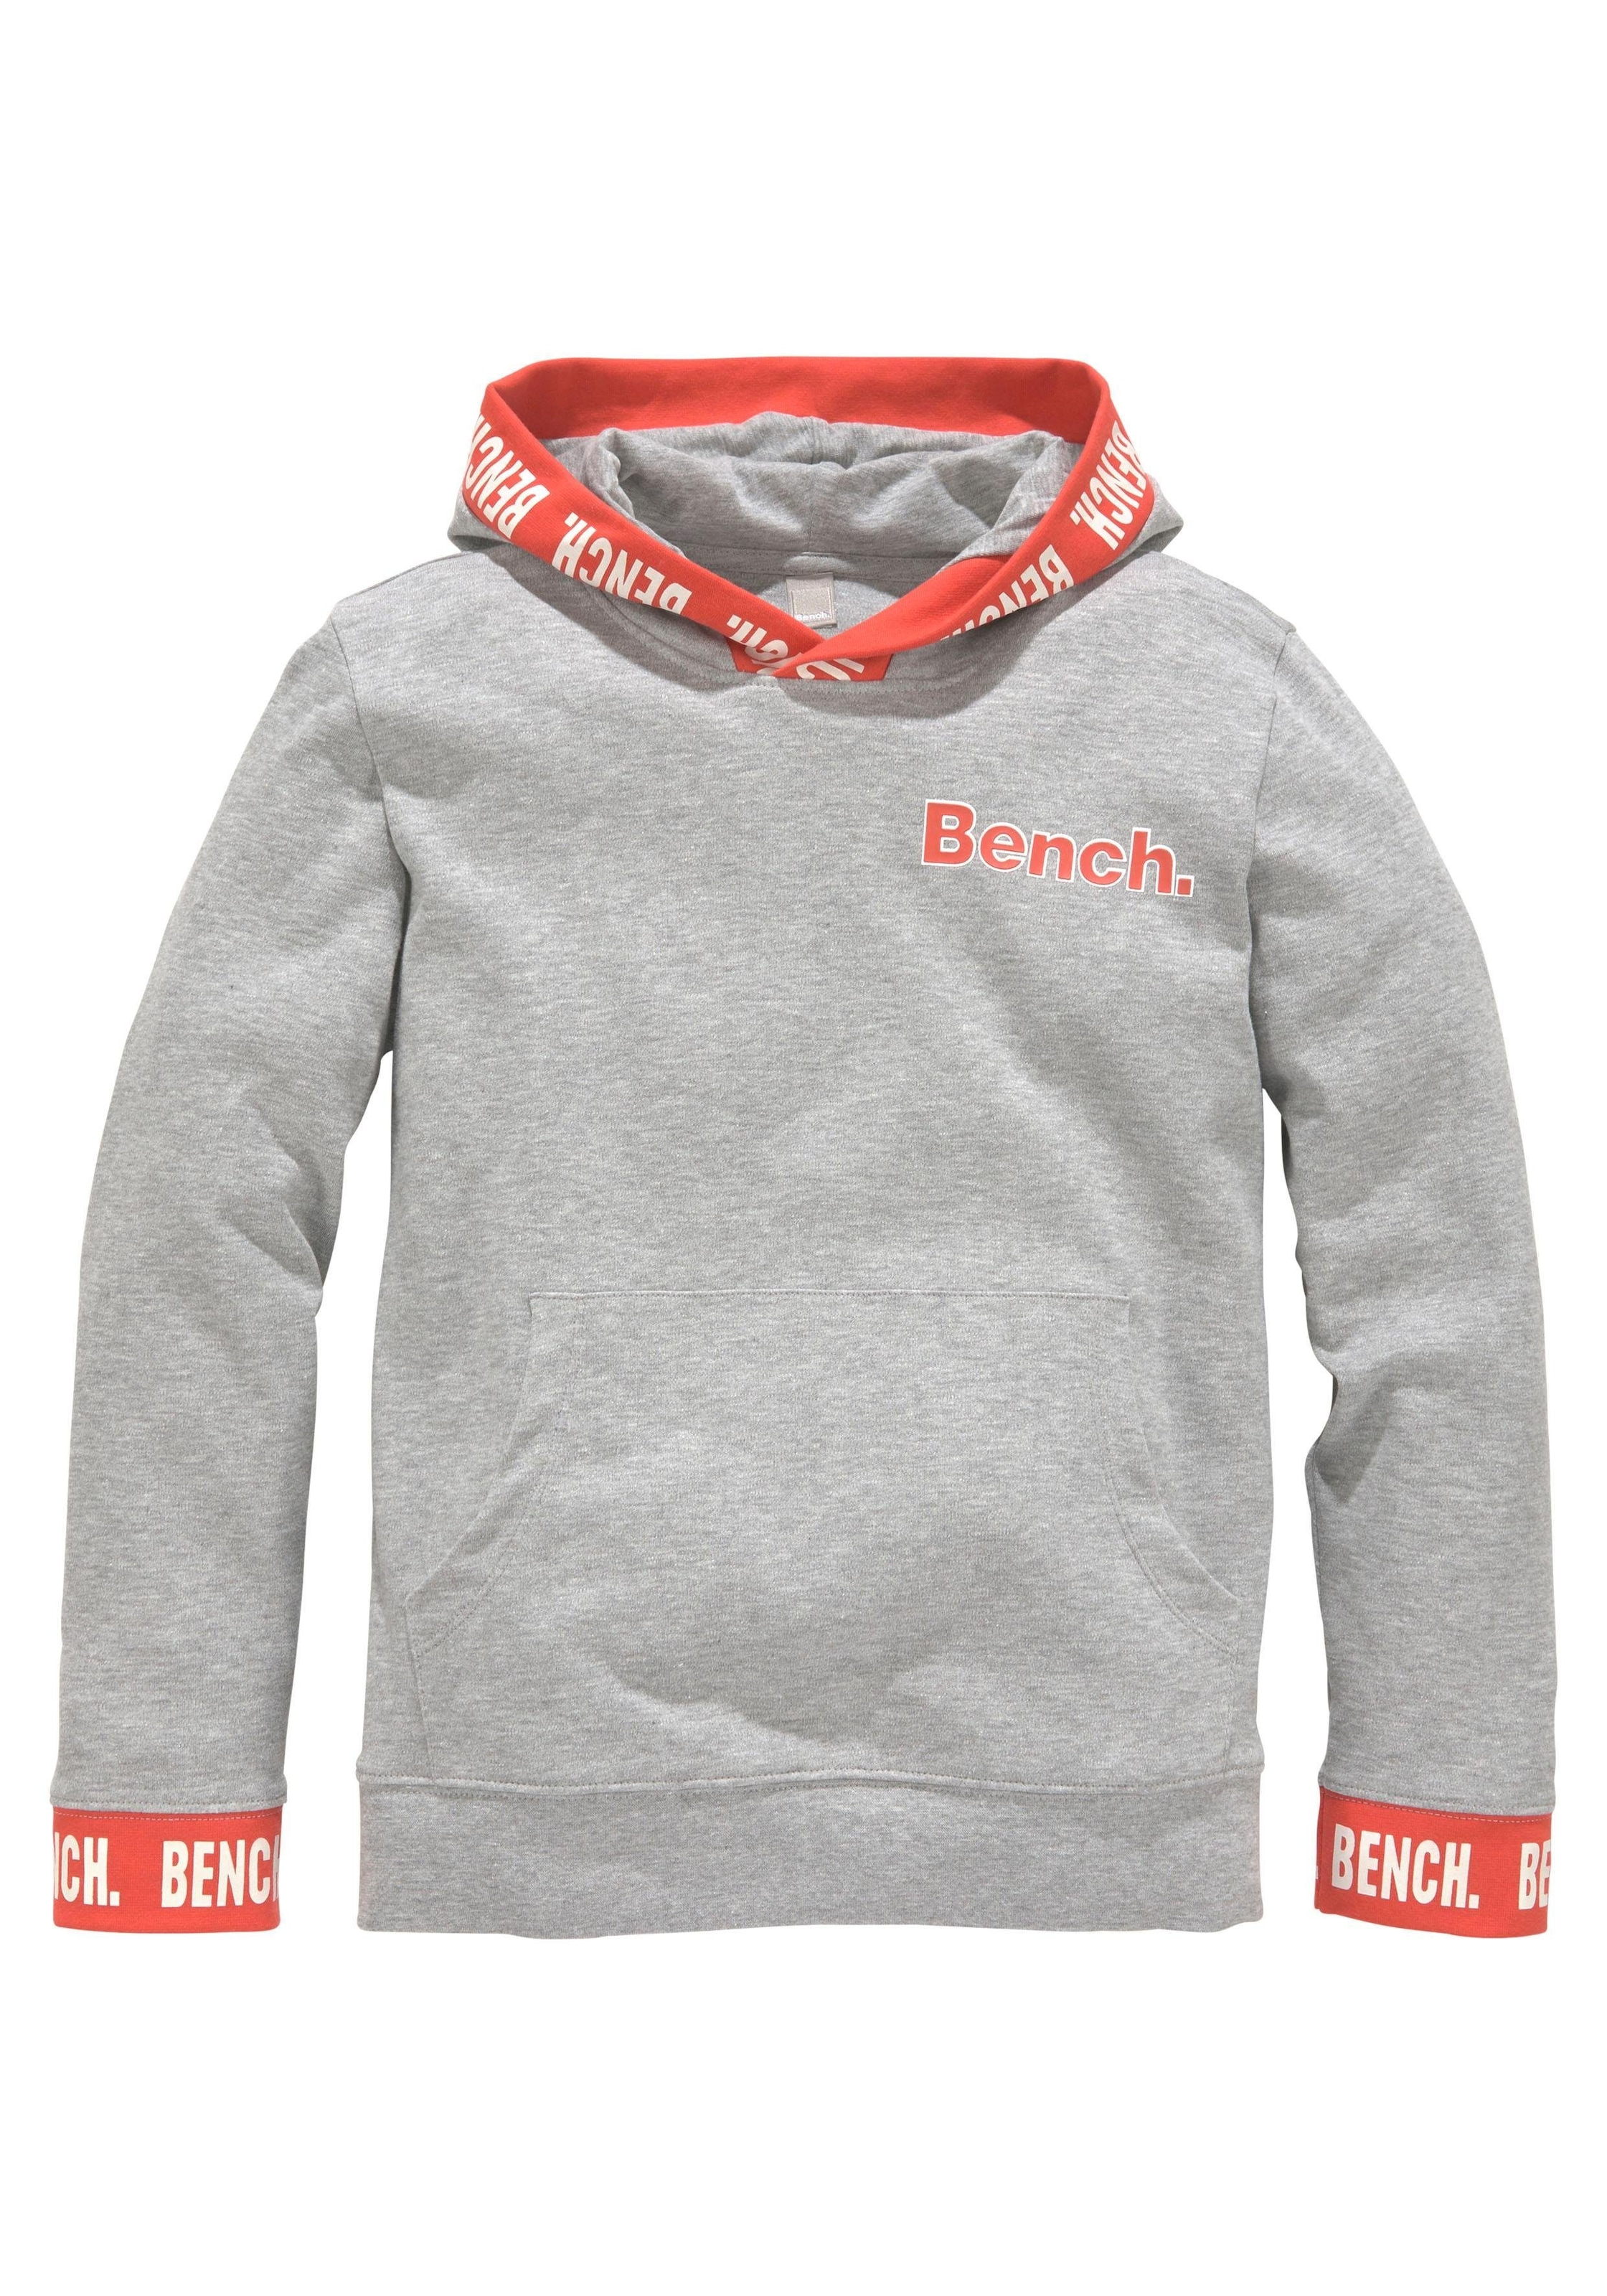 Bench. im Online-Shop Logo-Strickbündchen bestellen mit Sweatshirt,